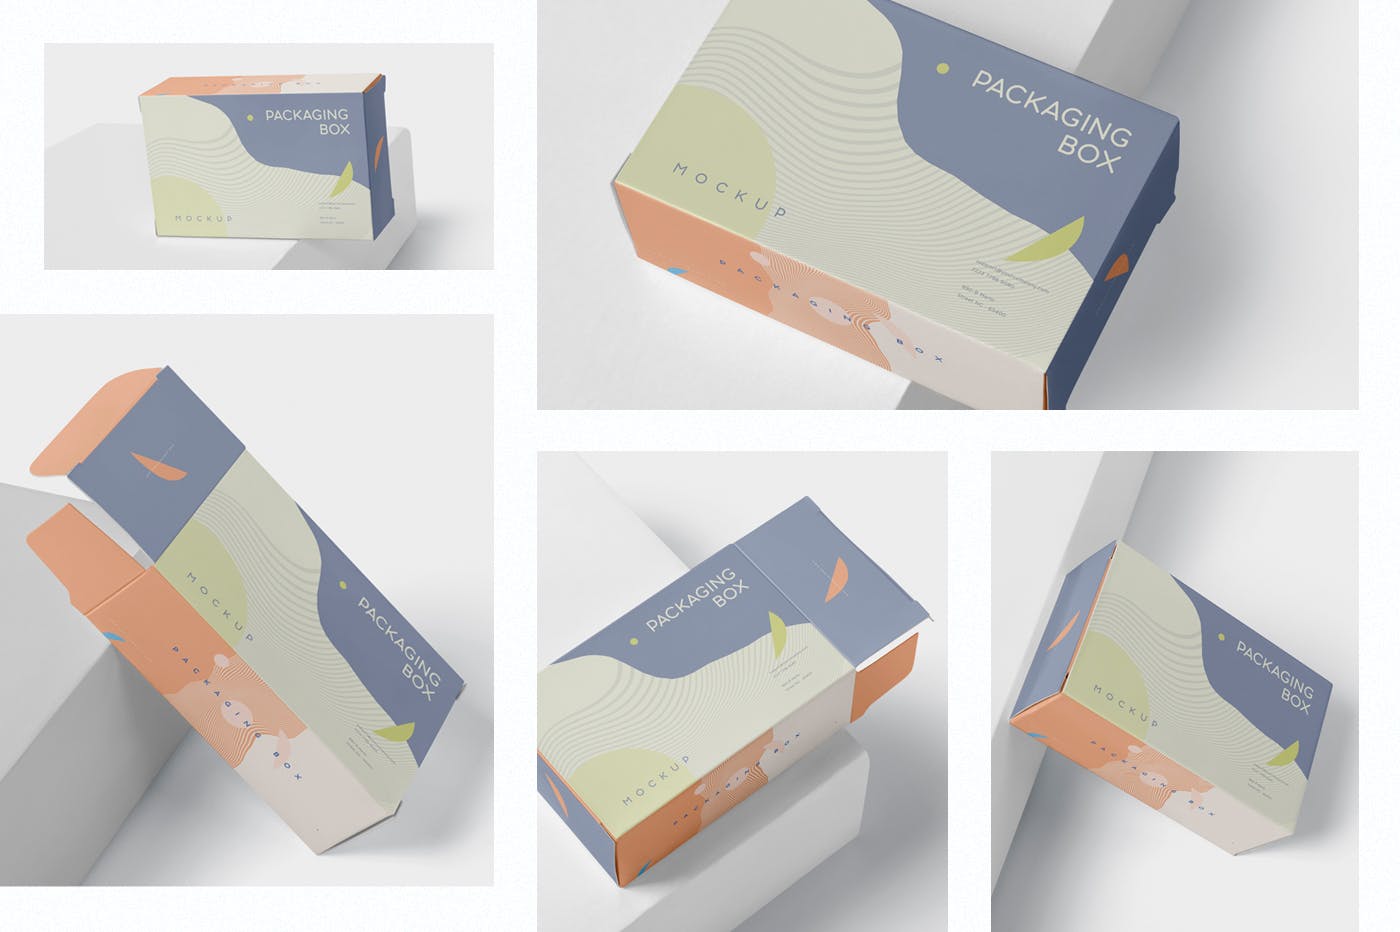 扁平矩形产品包装盒效果图蚂蚁素材精选 Package Box Mockup – Slim Rectangle Shape插图(1)